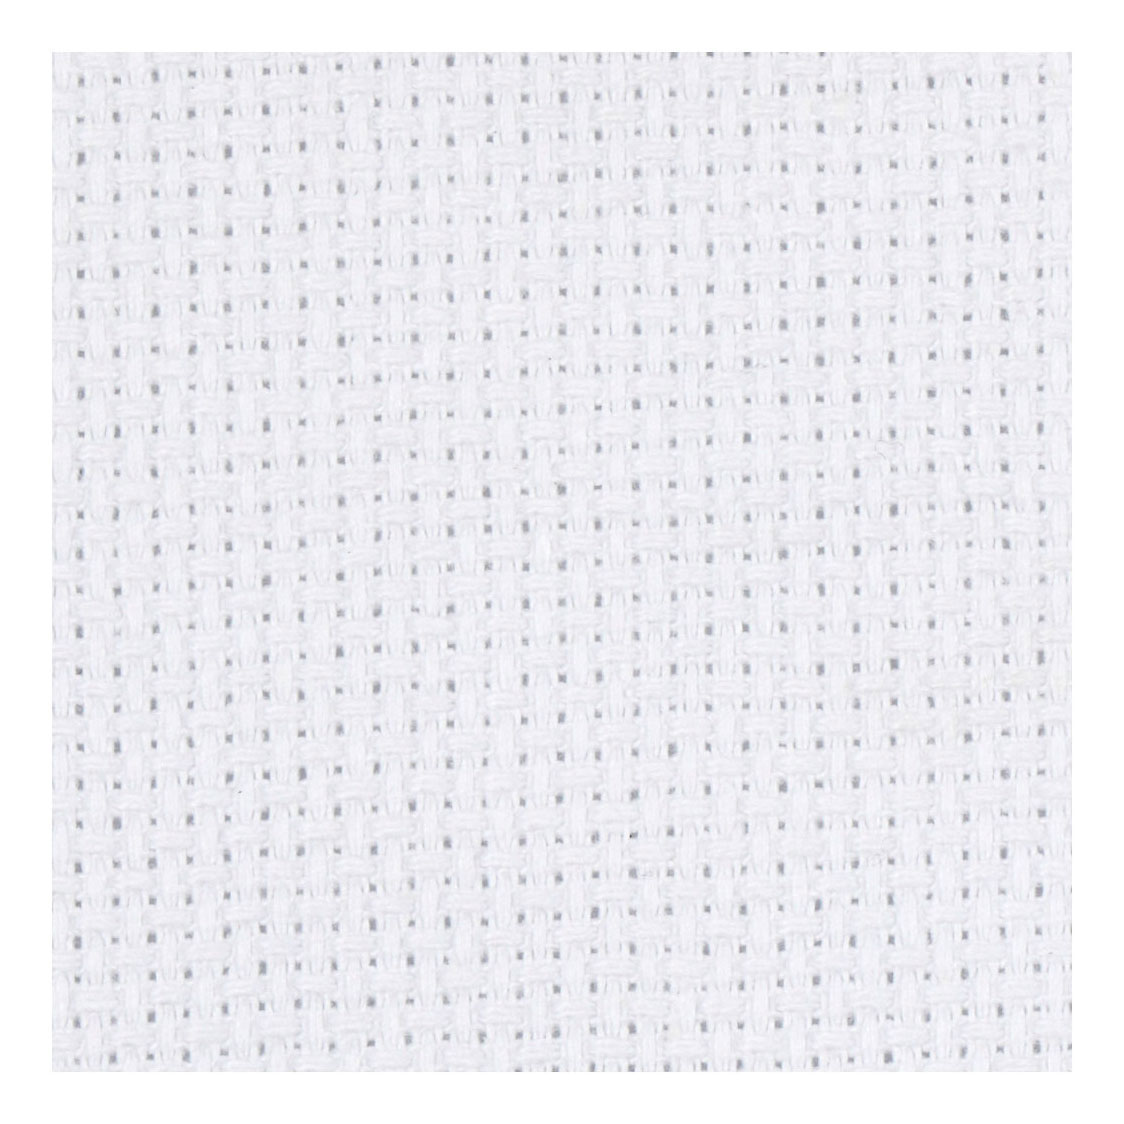 Aida-Weiß, 70 Quadrate pro 10 cm, 50 x 50 cm